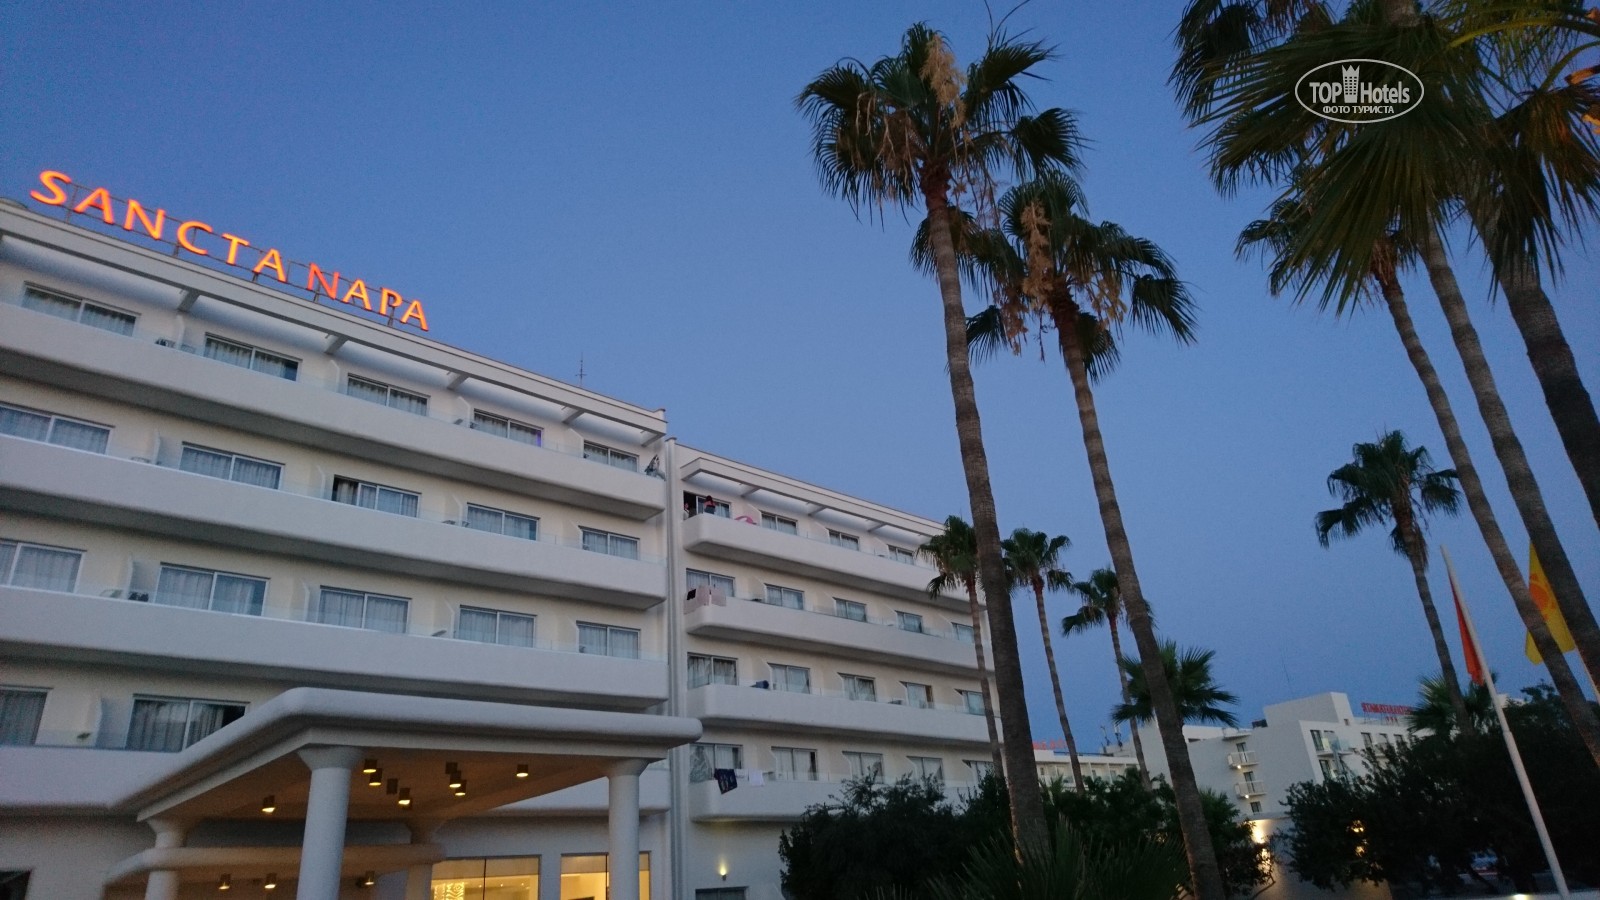 Горящие туры в отель Atlantica Sancta Napa Айя-Напа